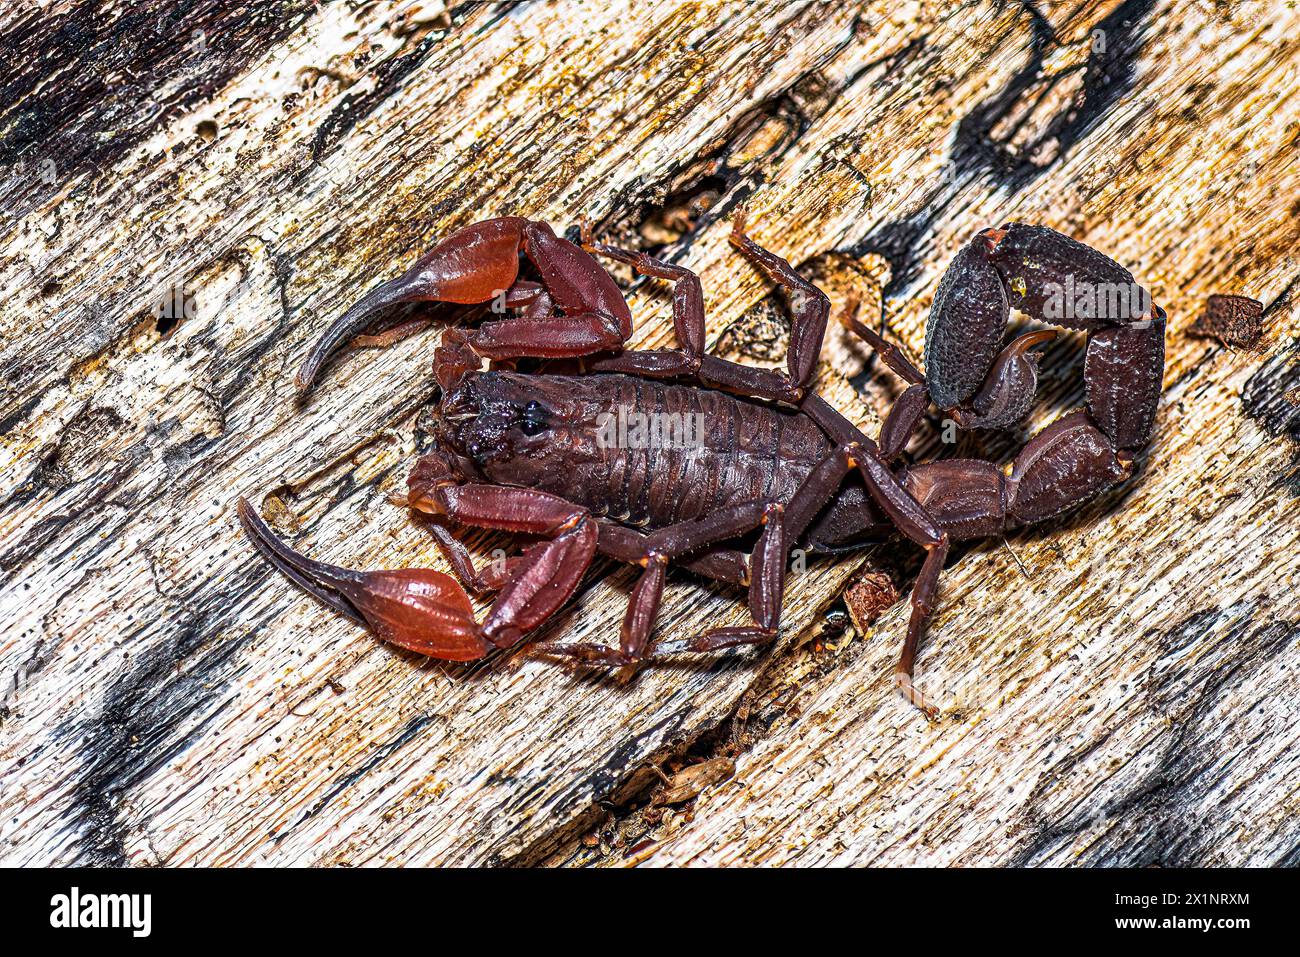 Brown bark scorpion close up image taken in Panama Stock Photo